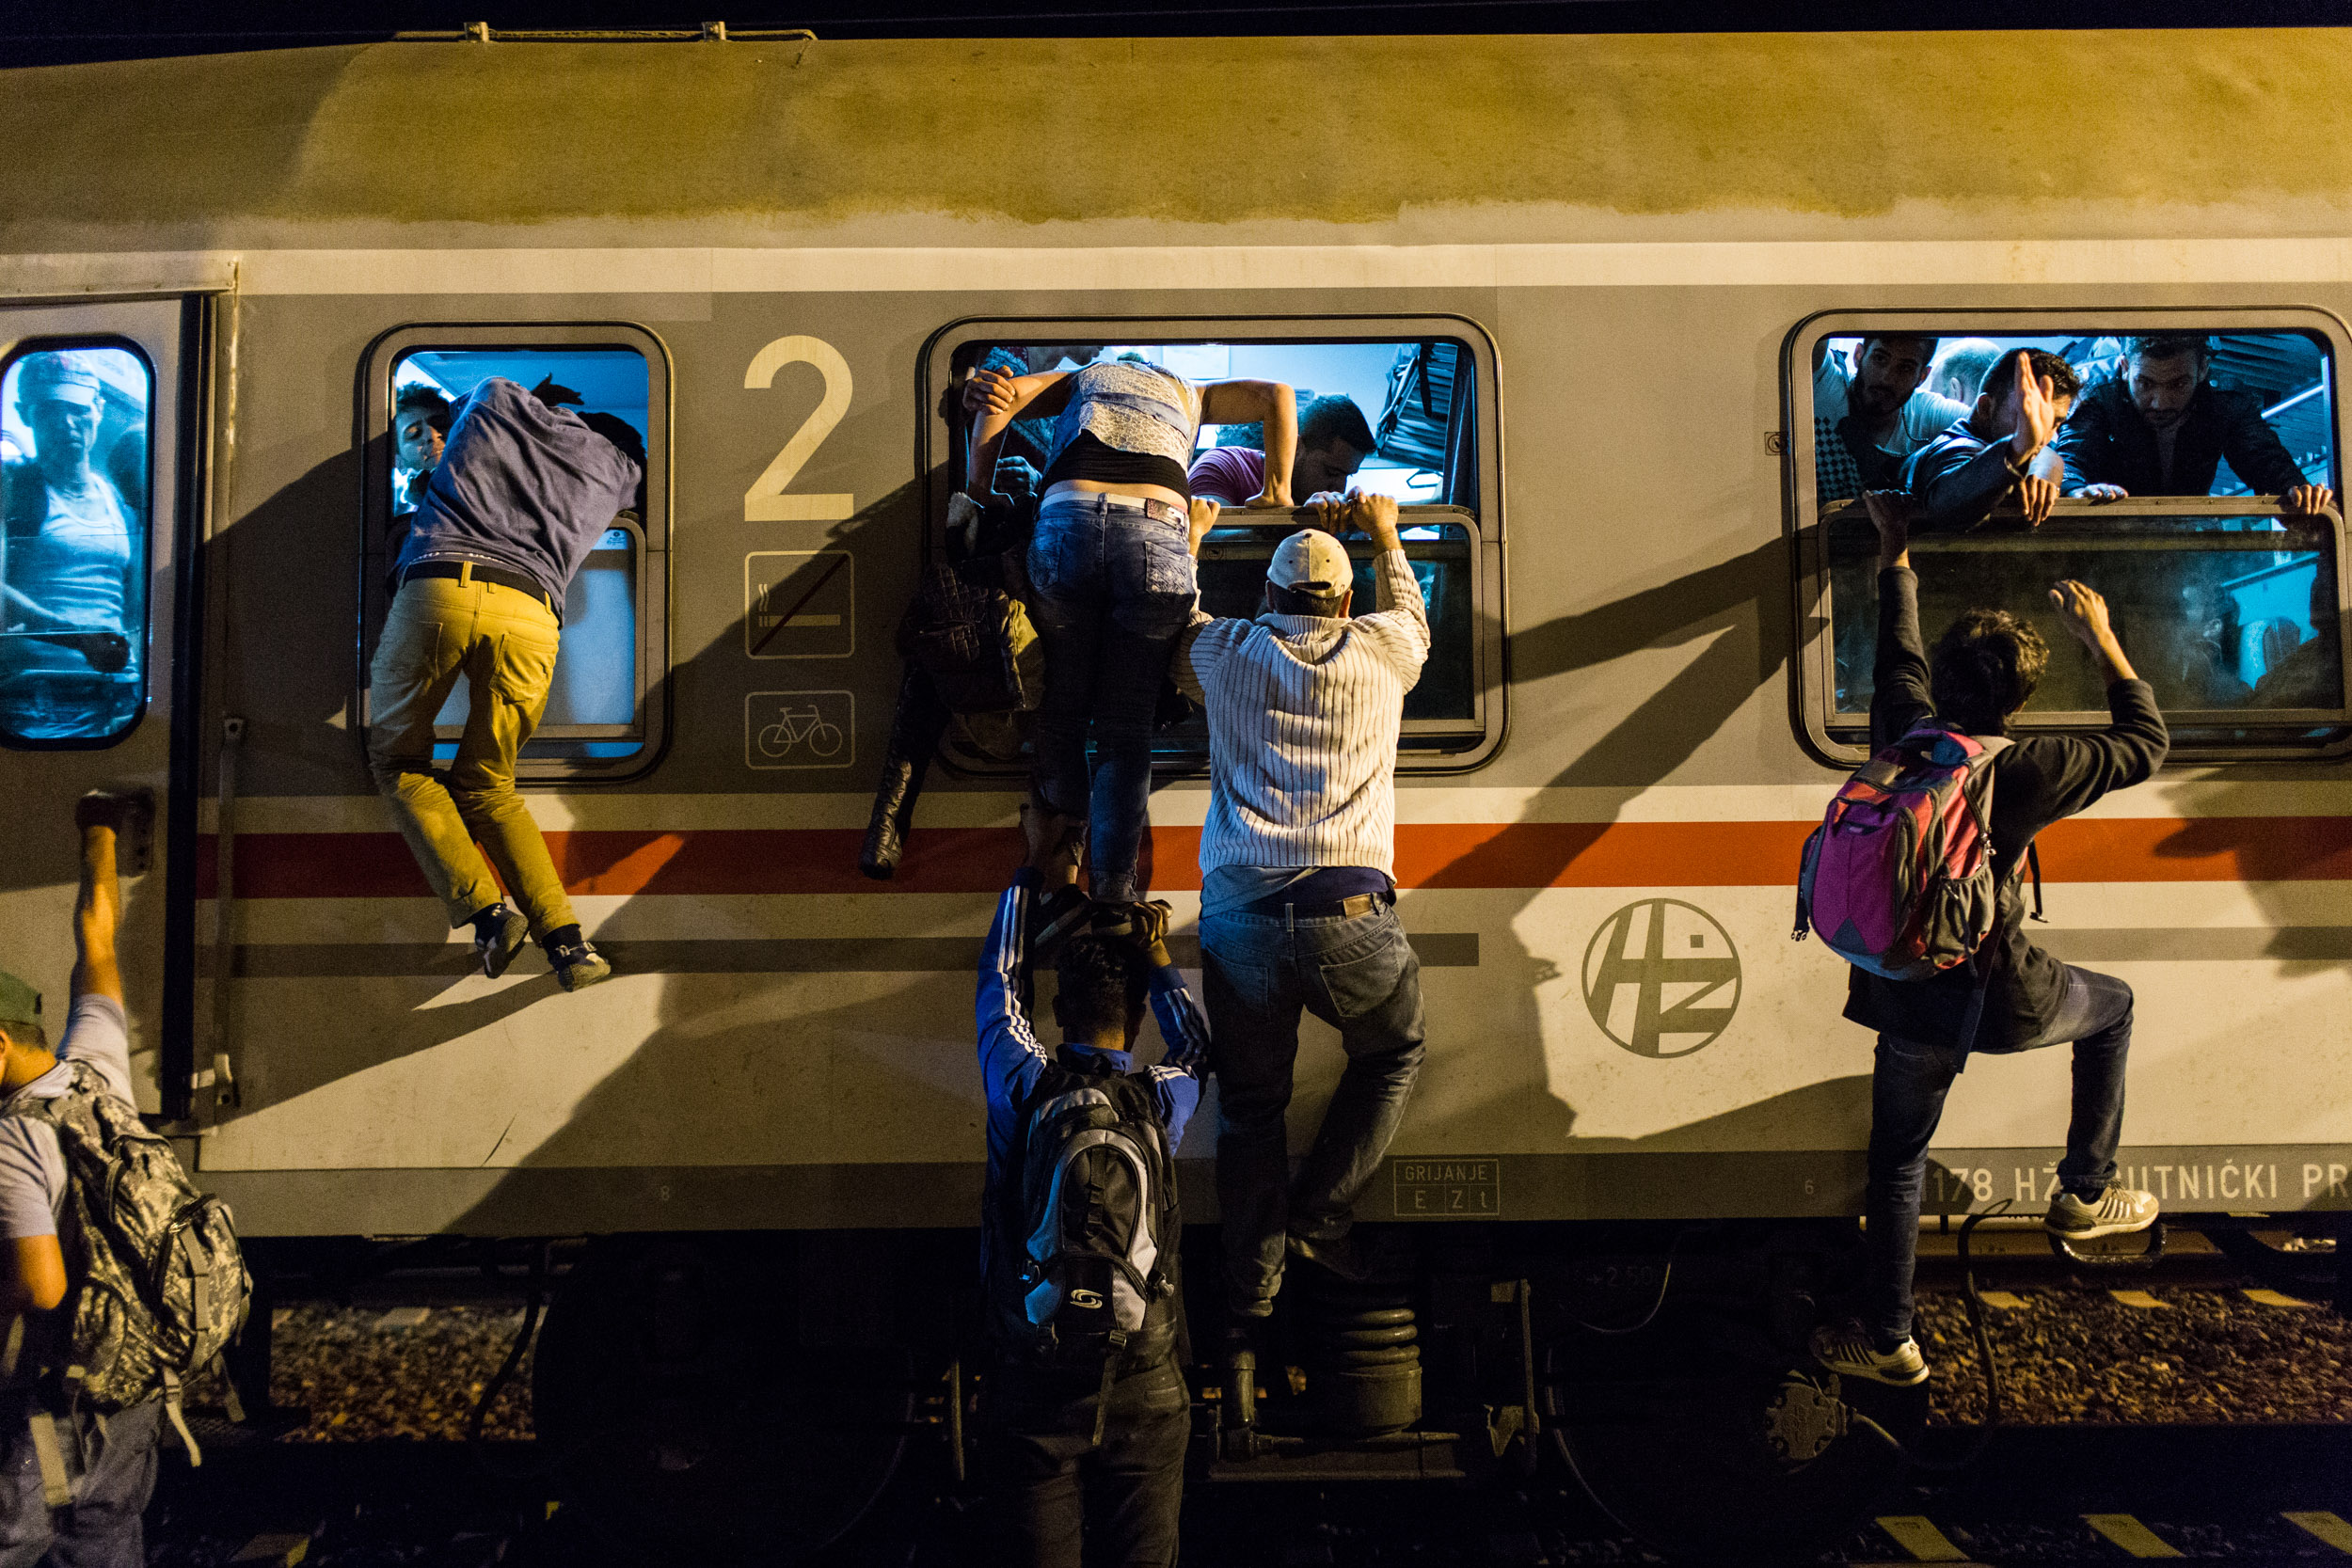 Flüchtlinge versuchen am Freitag, dem 18.9.2015, einen überfüllten Zug nach Zagreb zu betreten. Ab dem 15.9.2015 erreichten tausende Flüchtlinge Kroatien auf ihrem Weg nach Zentraleuropa, die kroatische Polizei war damit völlig überfordert.